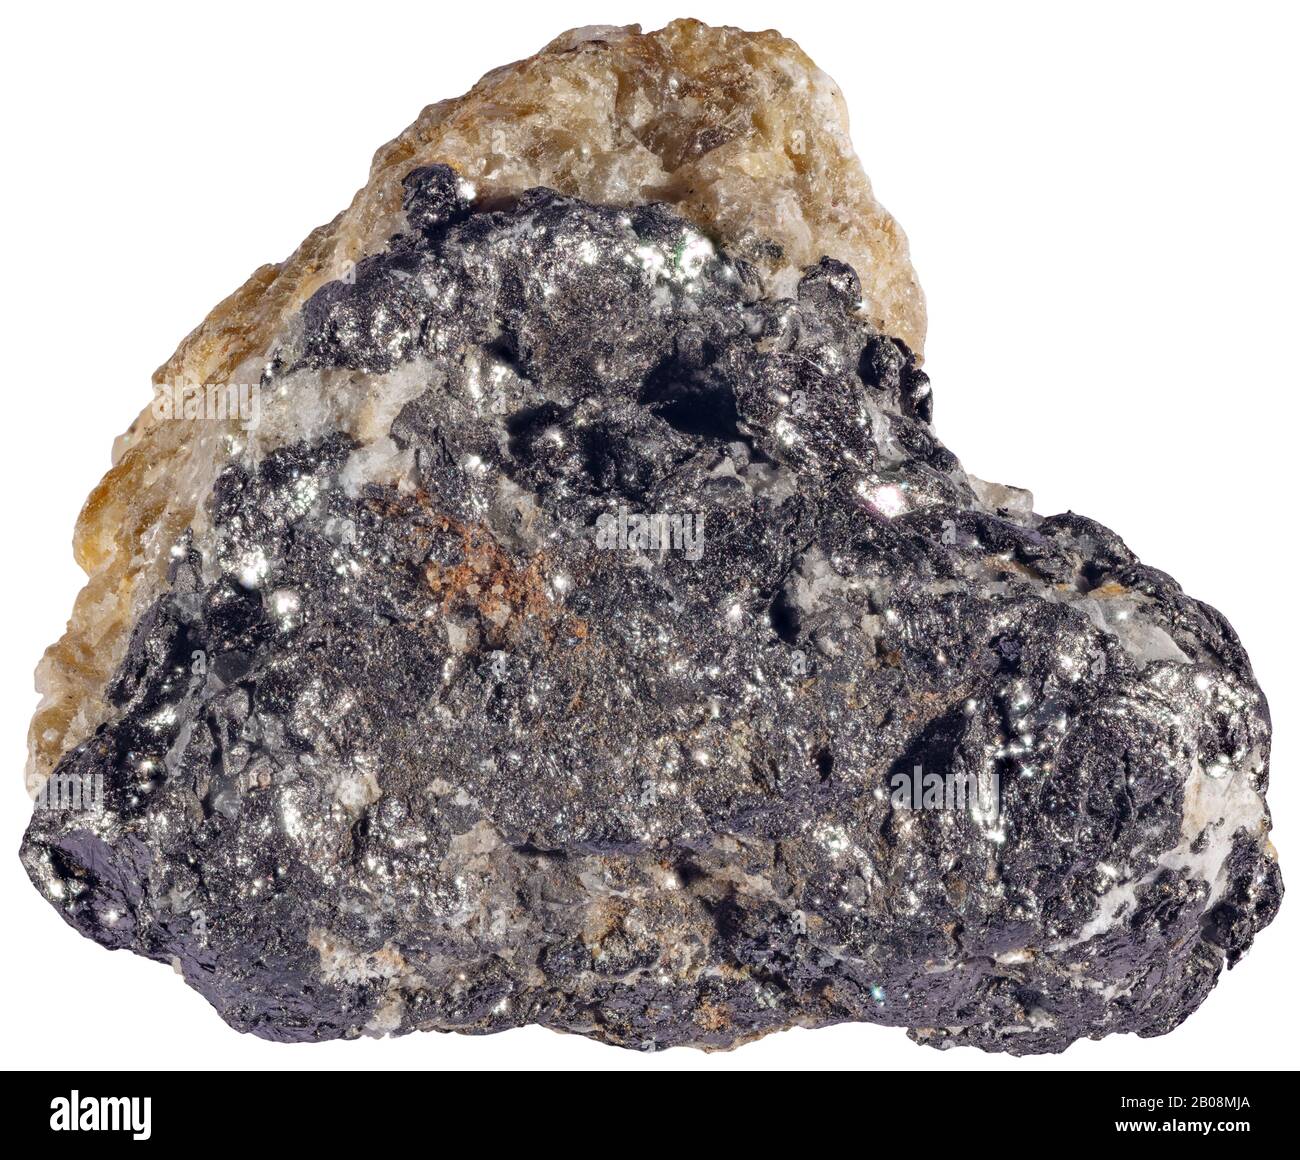 Shungite, Karelia, Russia Shungite Shungite è un mineraloide nero, brillante, non cristallino costituito da oltre il 98% in peso di carbonio. Foto Stock